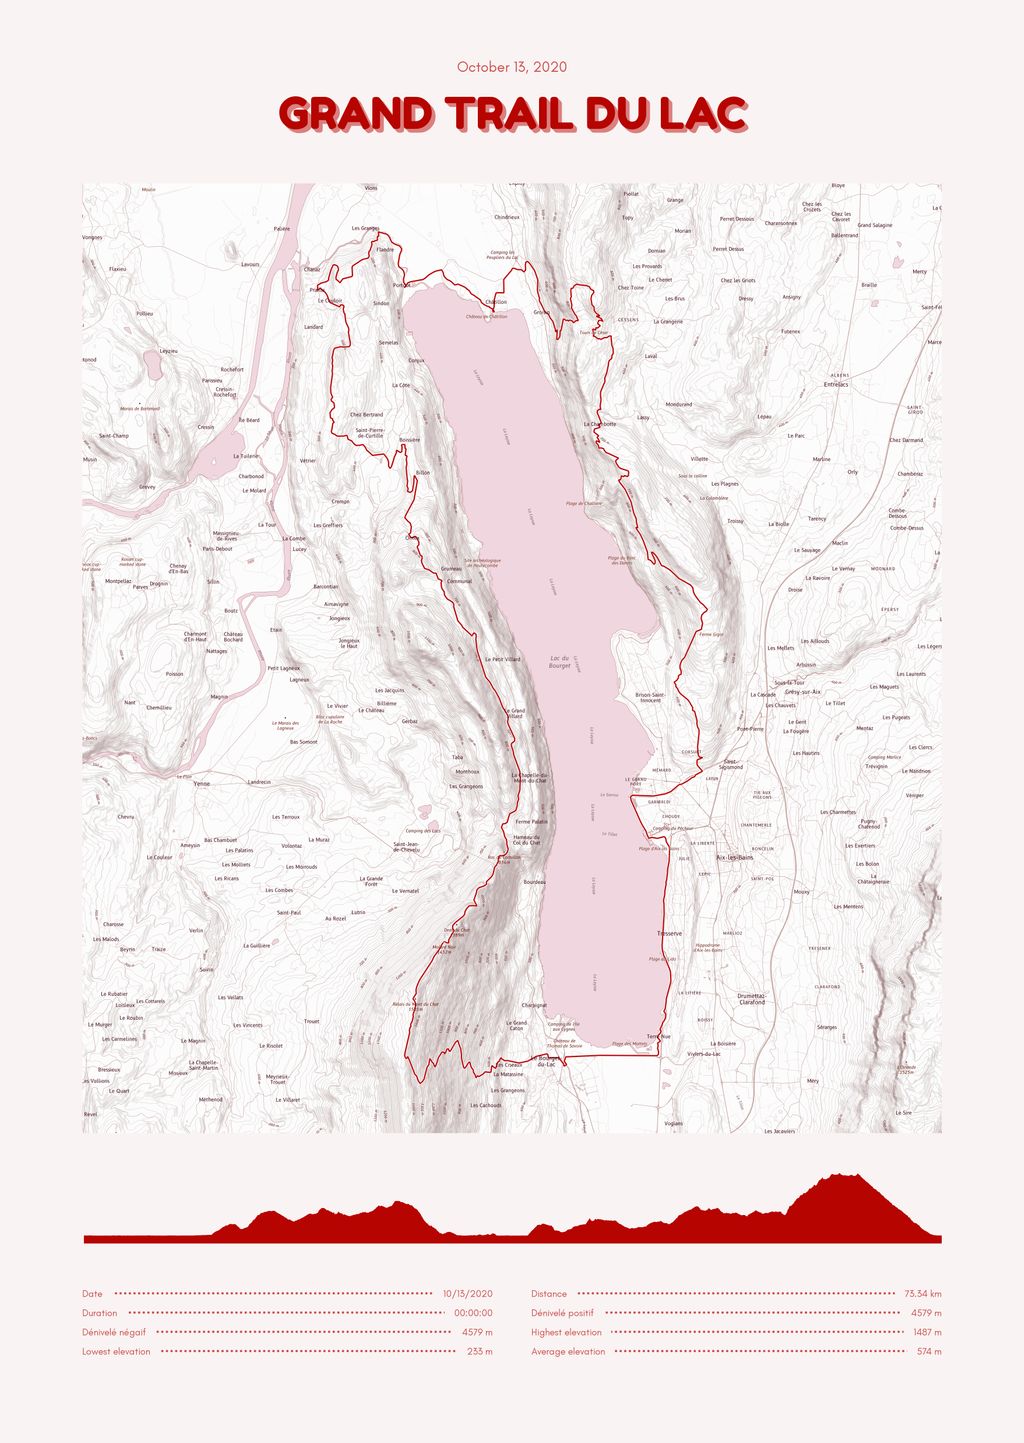 Póster con un mapa de Grand Trail du Lac